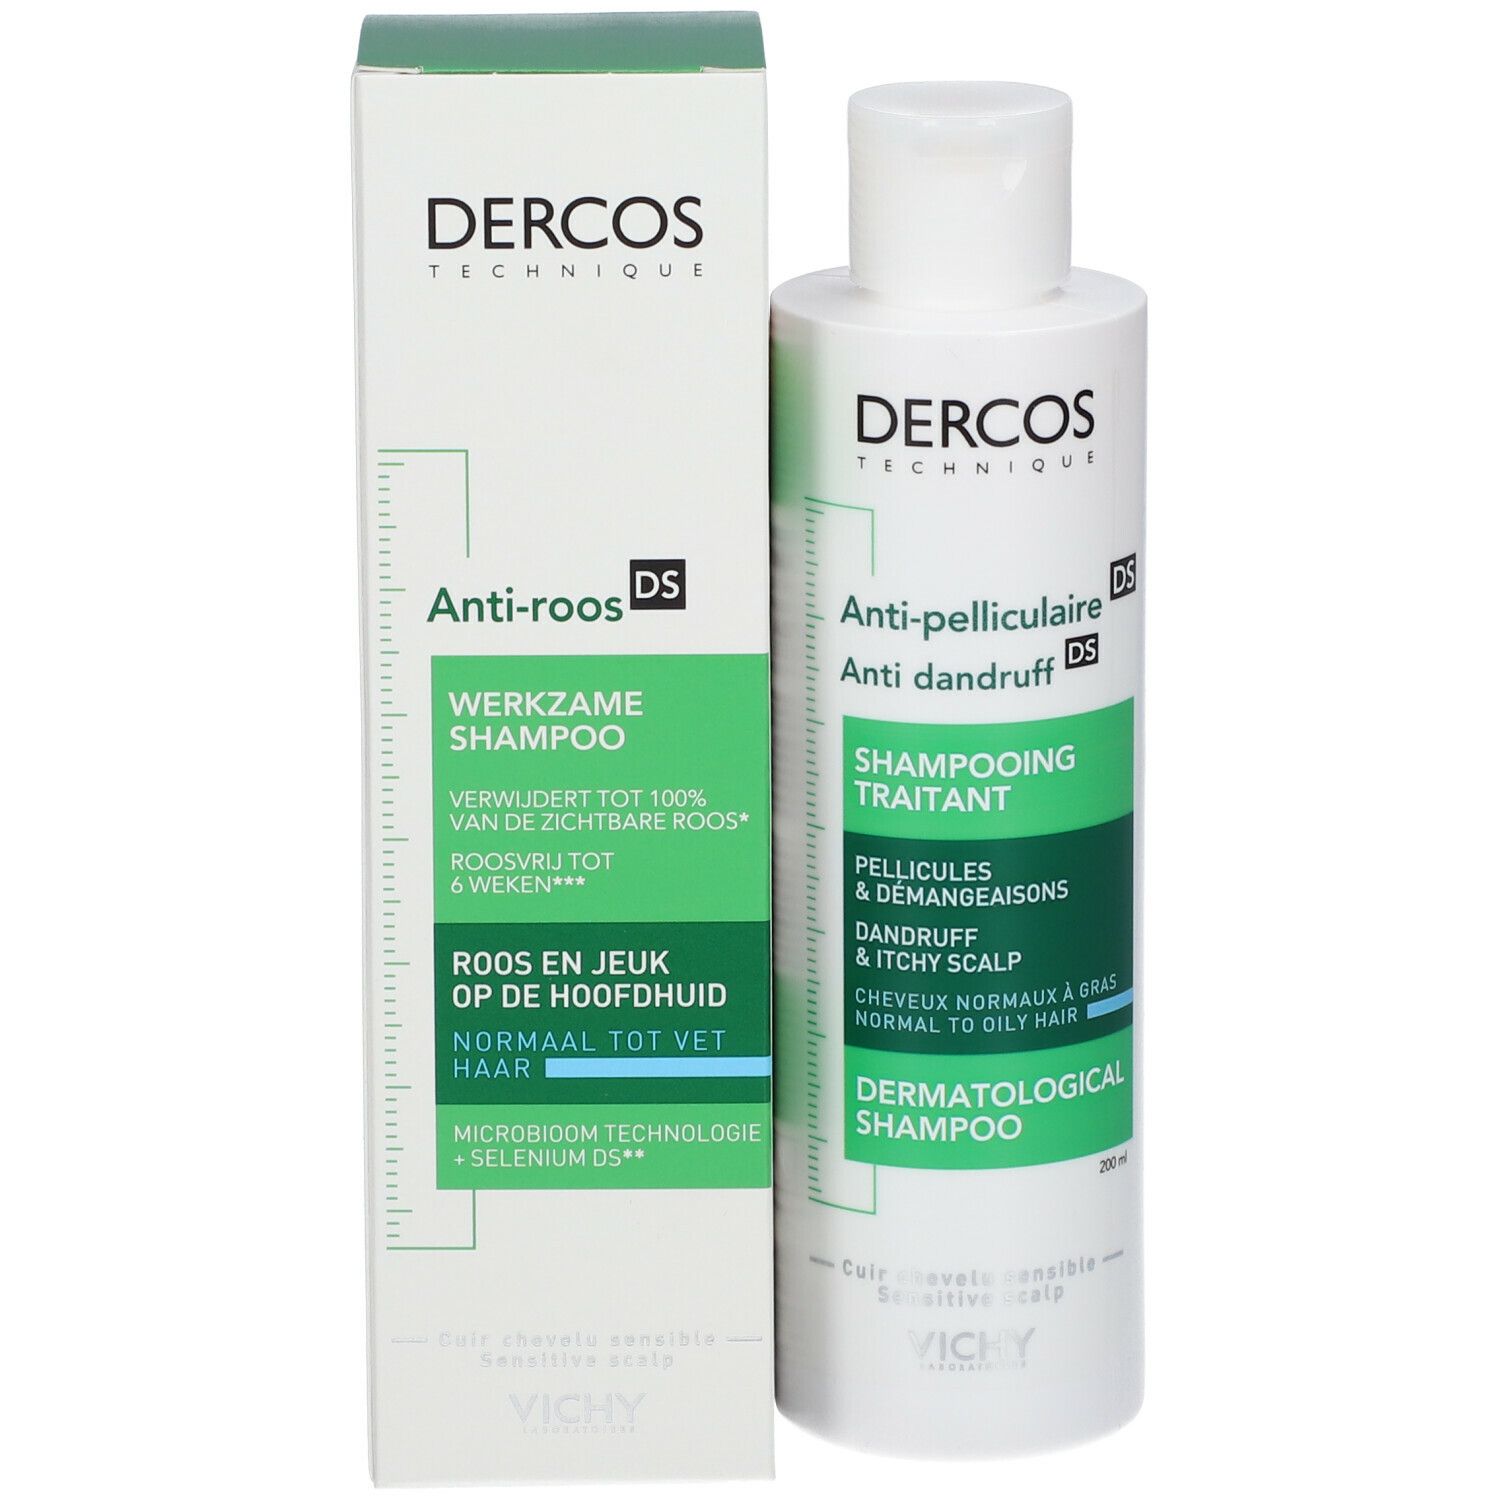 VICHY Dercos Technique Antipelliculaire DS Shampooing traitant pellicules & démangeaisons cheveux normaux à gras 200ml